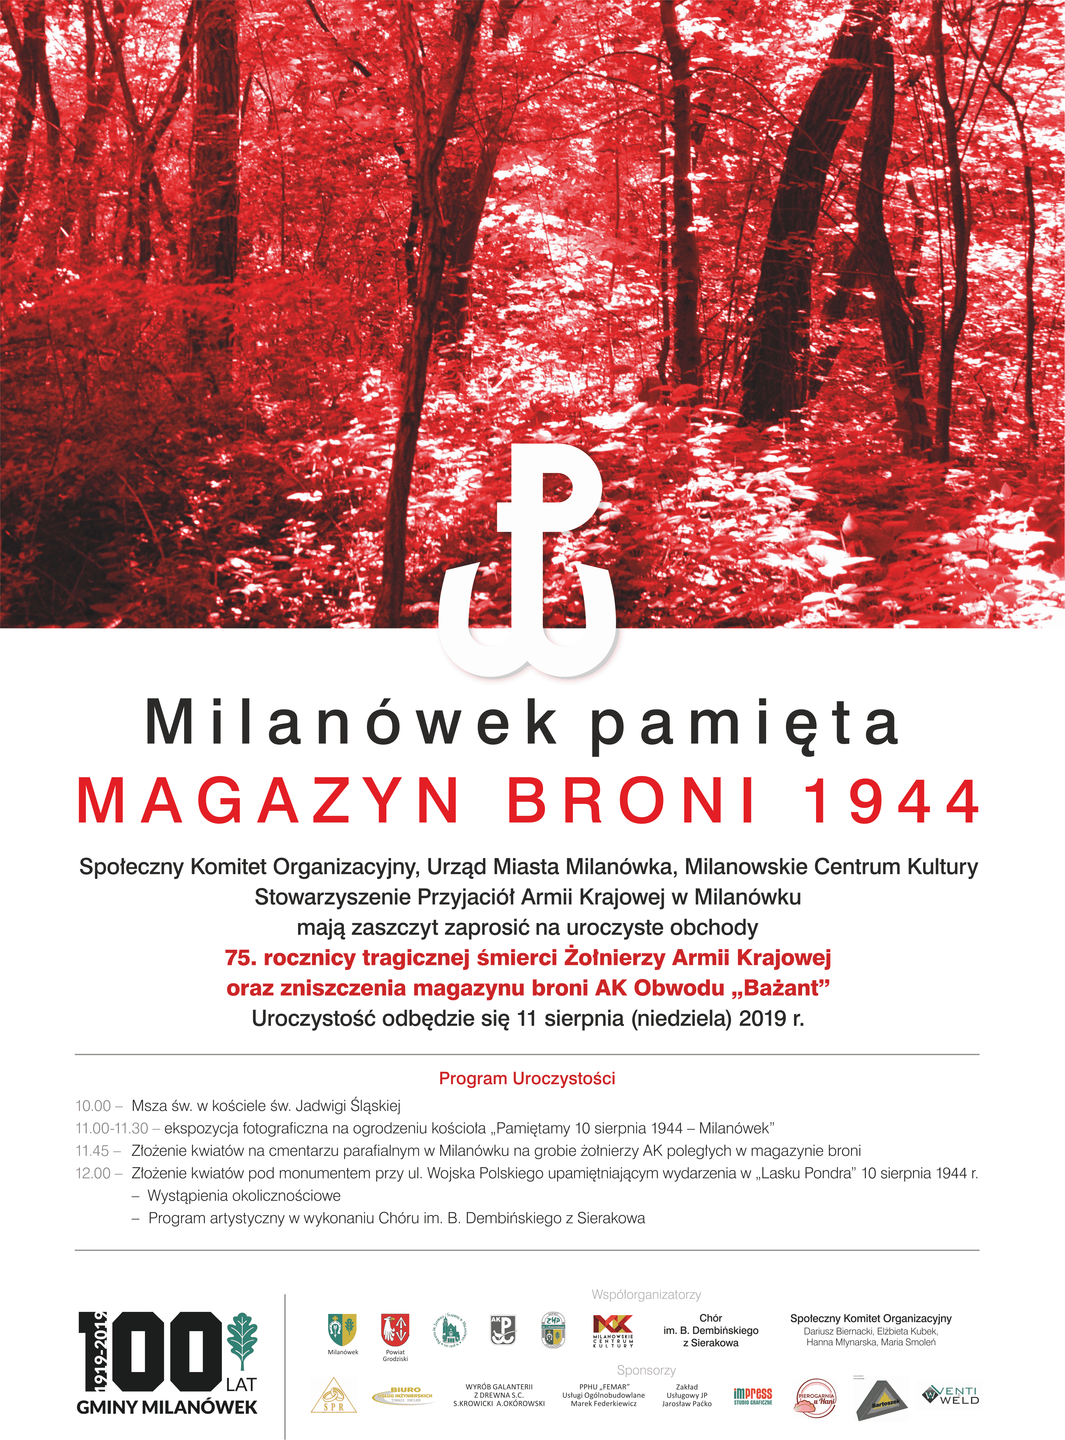 Milanówek pamięta - Magazyn Broni 1944